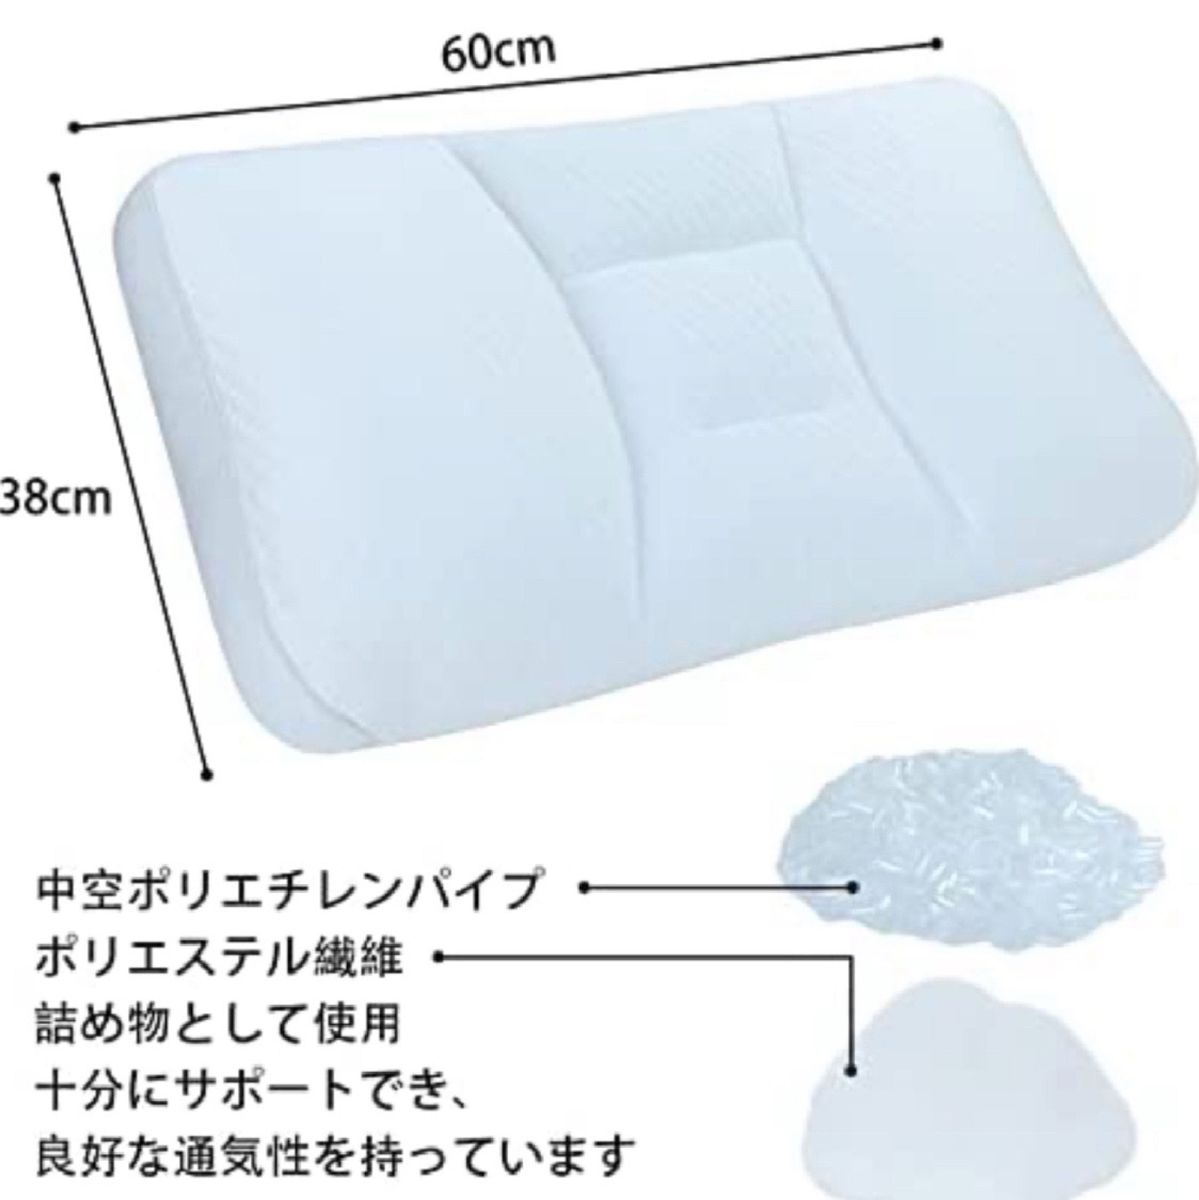 高級枕 まくら 肩こり解消人気 調節可能 低反発枕 高通気性 肩こり ネックピロー パイプ枕 丸洗い可能 (38×60×10cm